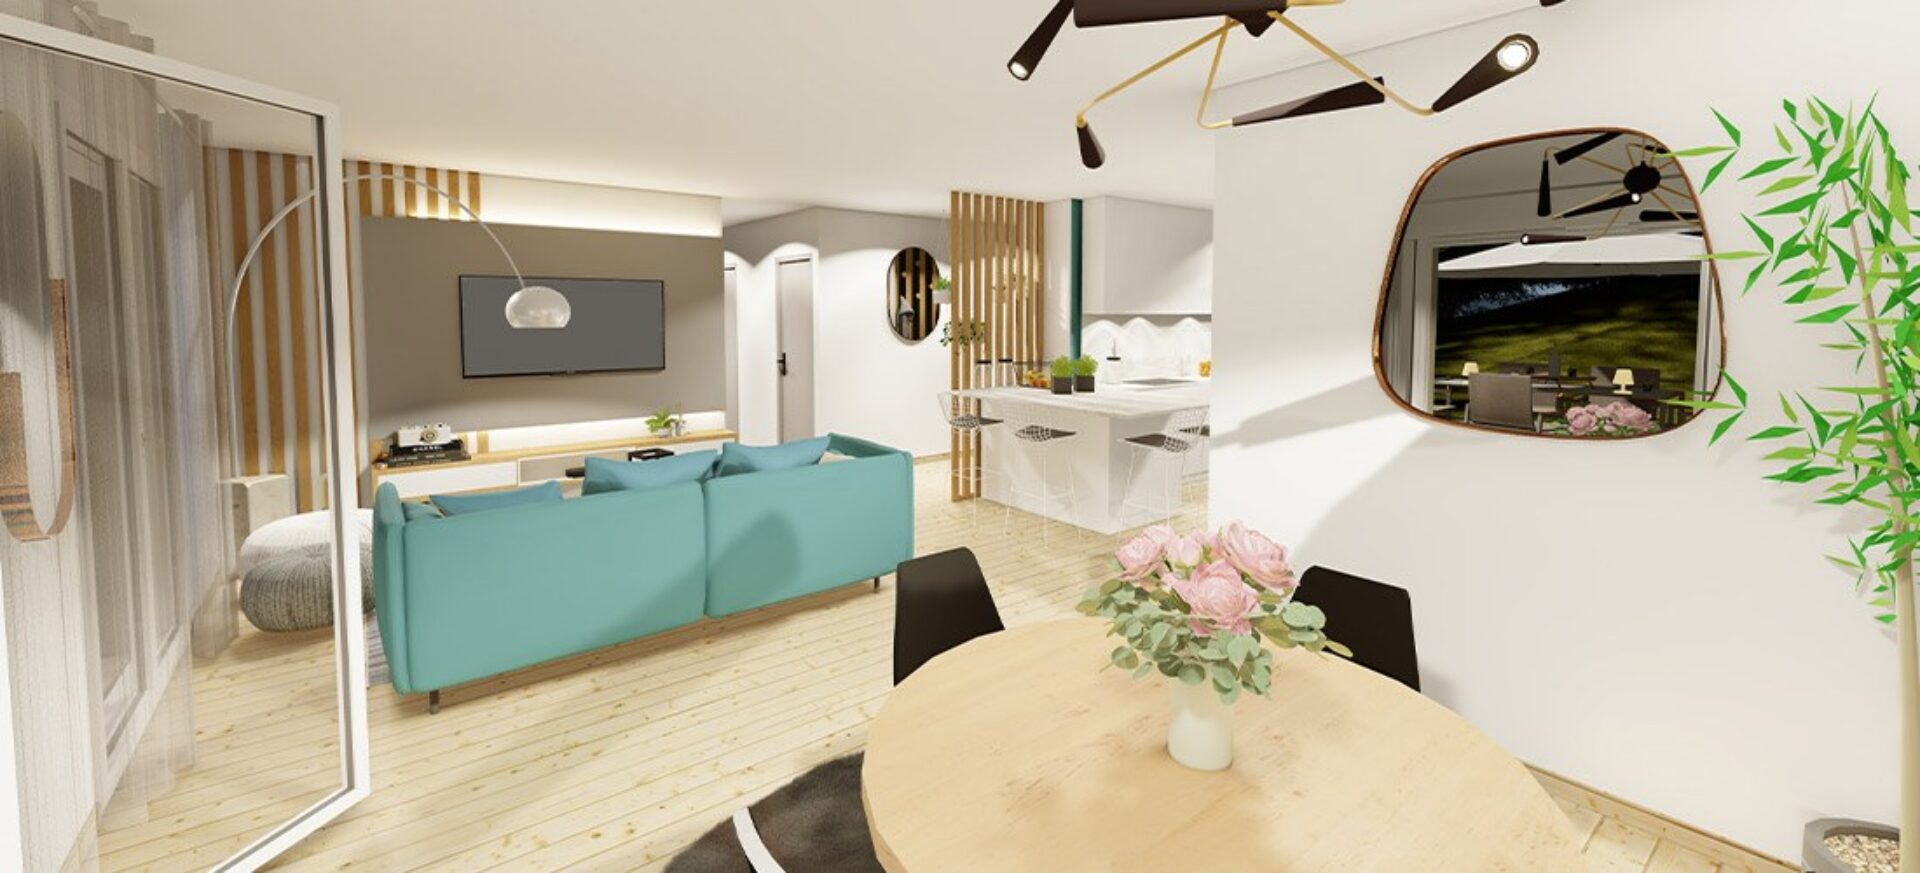 Modèle de maison Pavot | 100 m² | 3 chambres | Maisons MCA